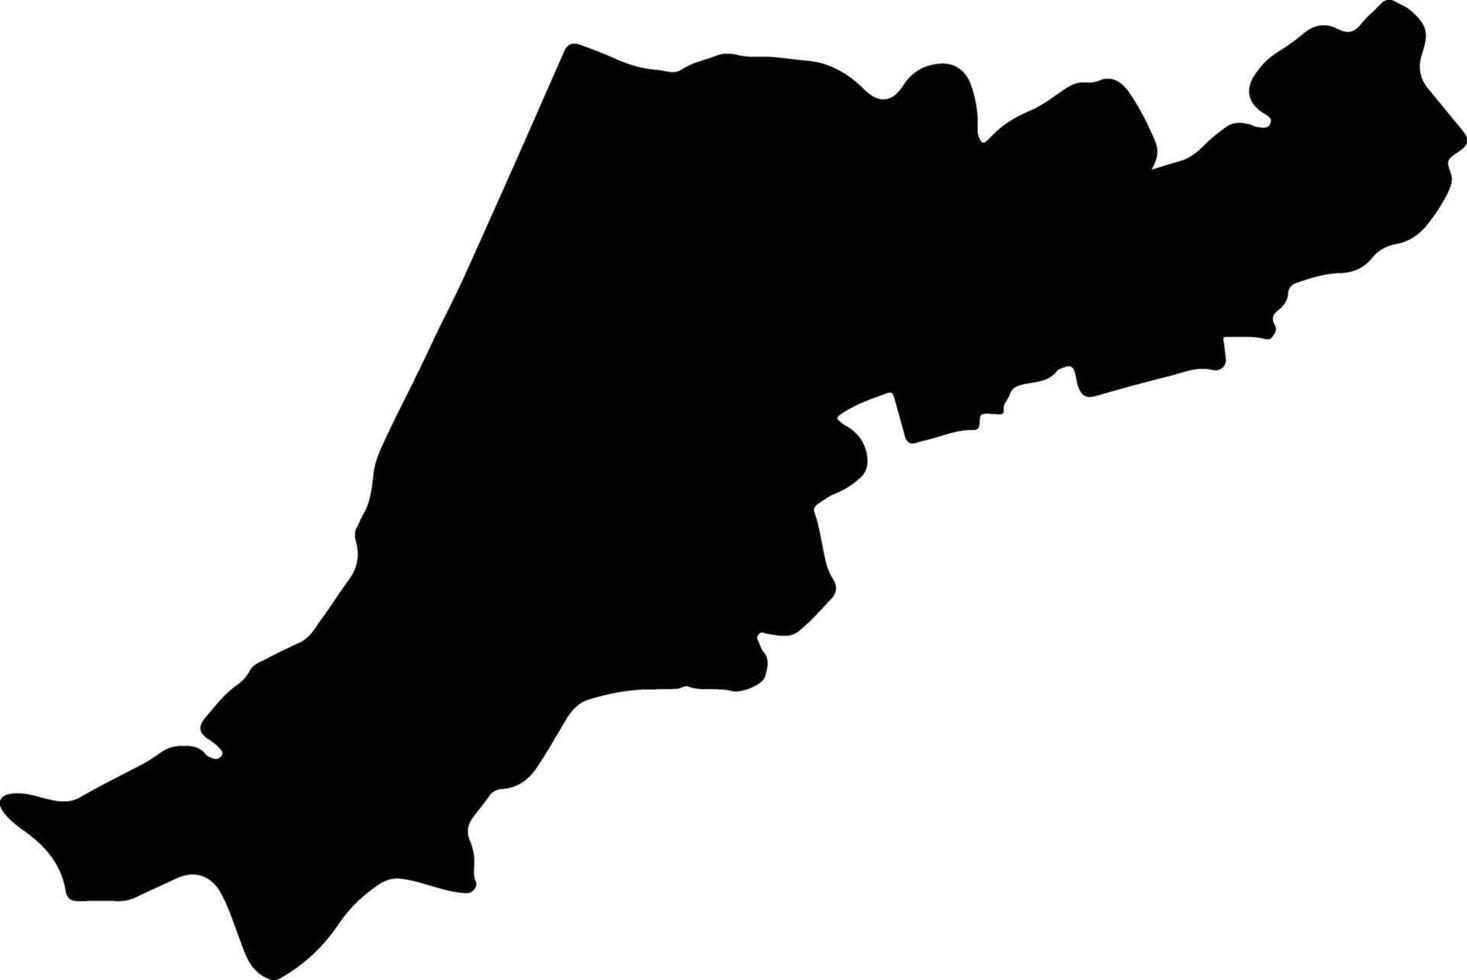 Leiria Portugal silhouette map vector